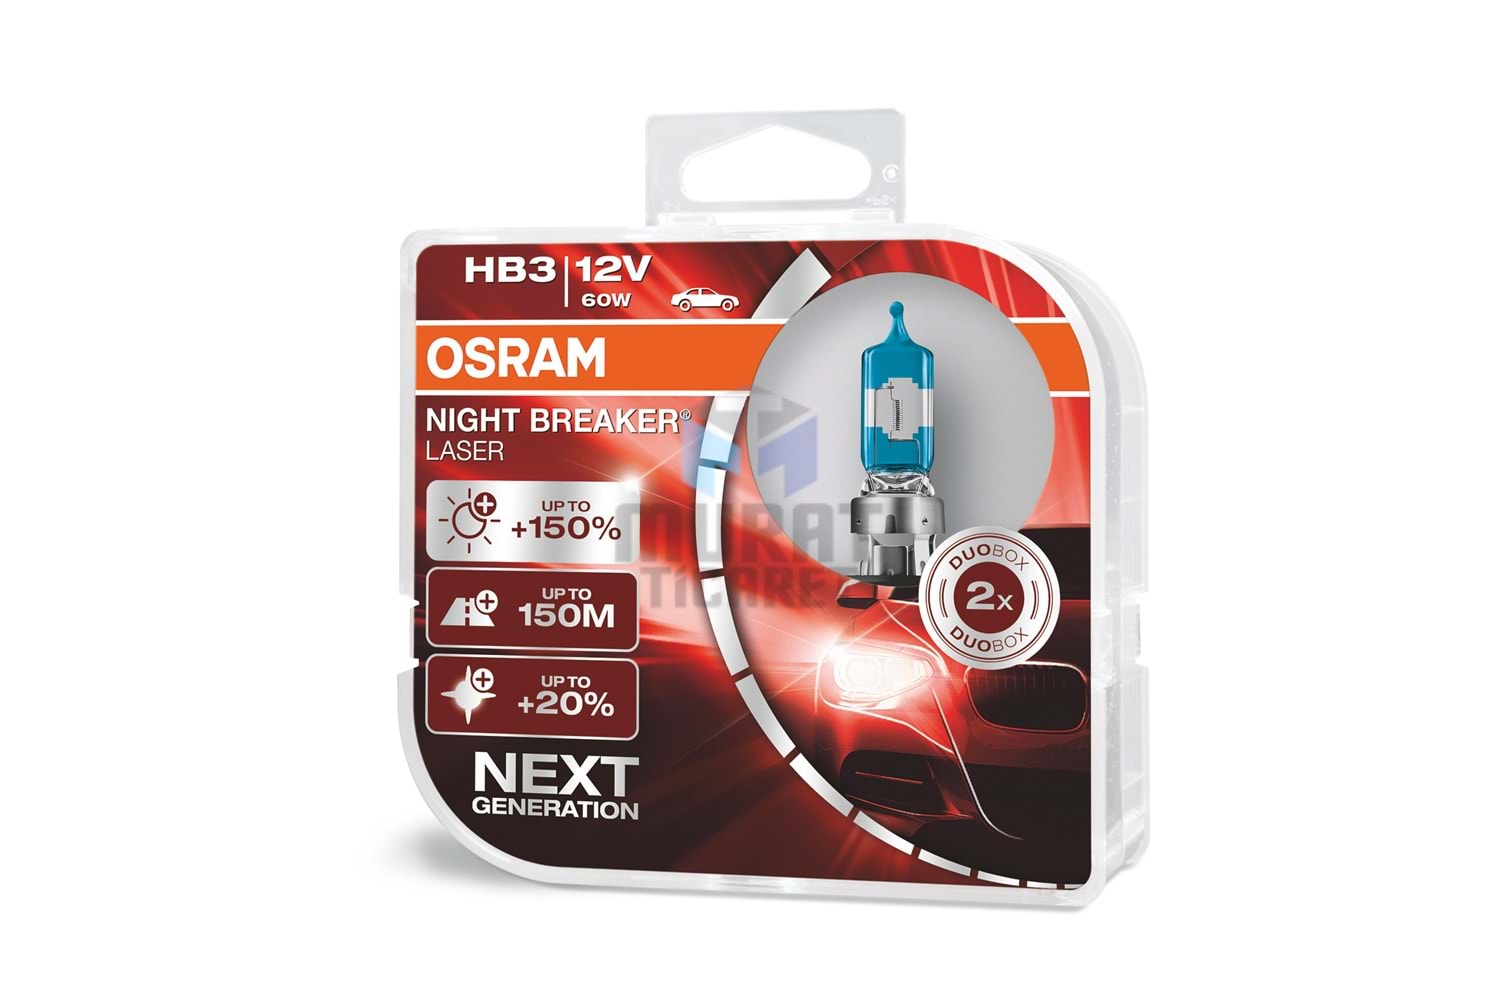 OSRAM NIGHT BREAKER LASER, HB3-12 Volt 65 Watt